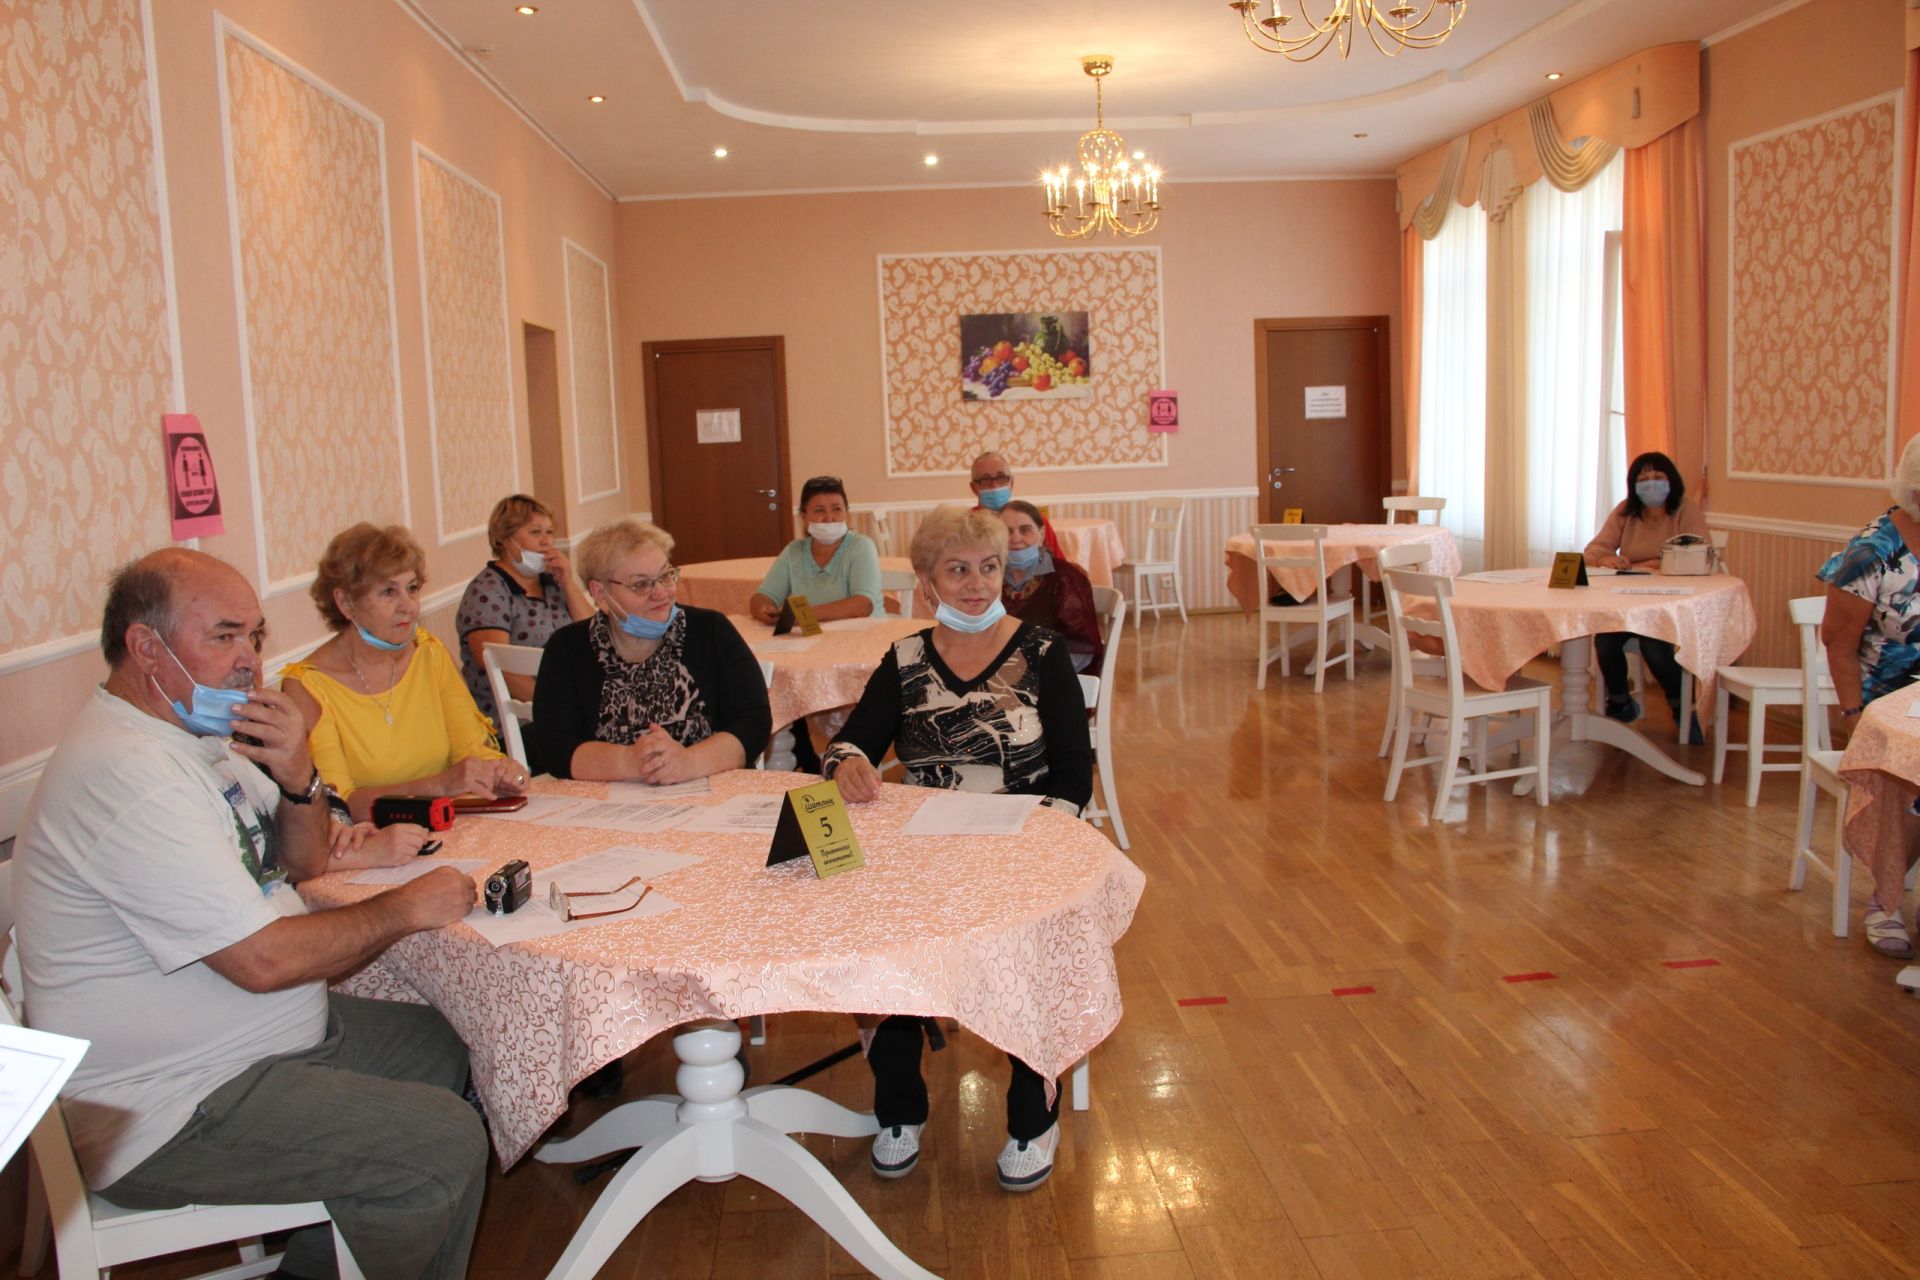 Заинский социально-реабилитационный центр центр получил подарок ко Дню пожилых людей